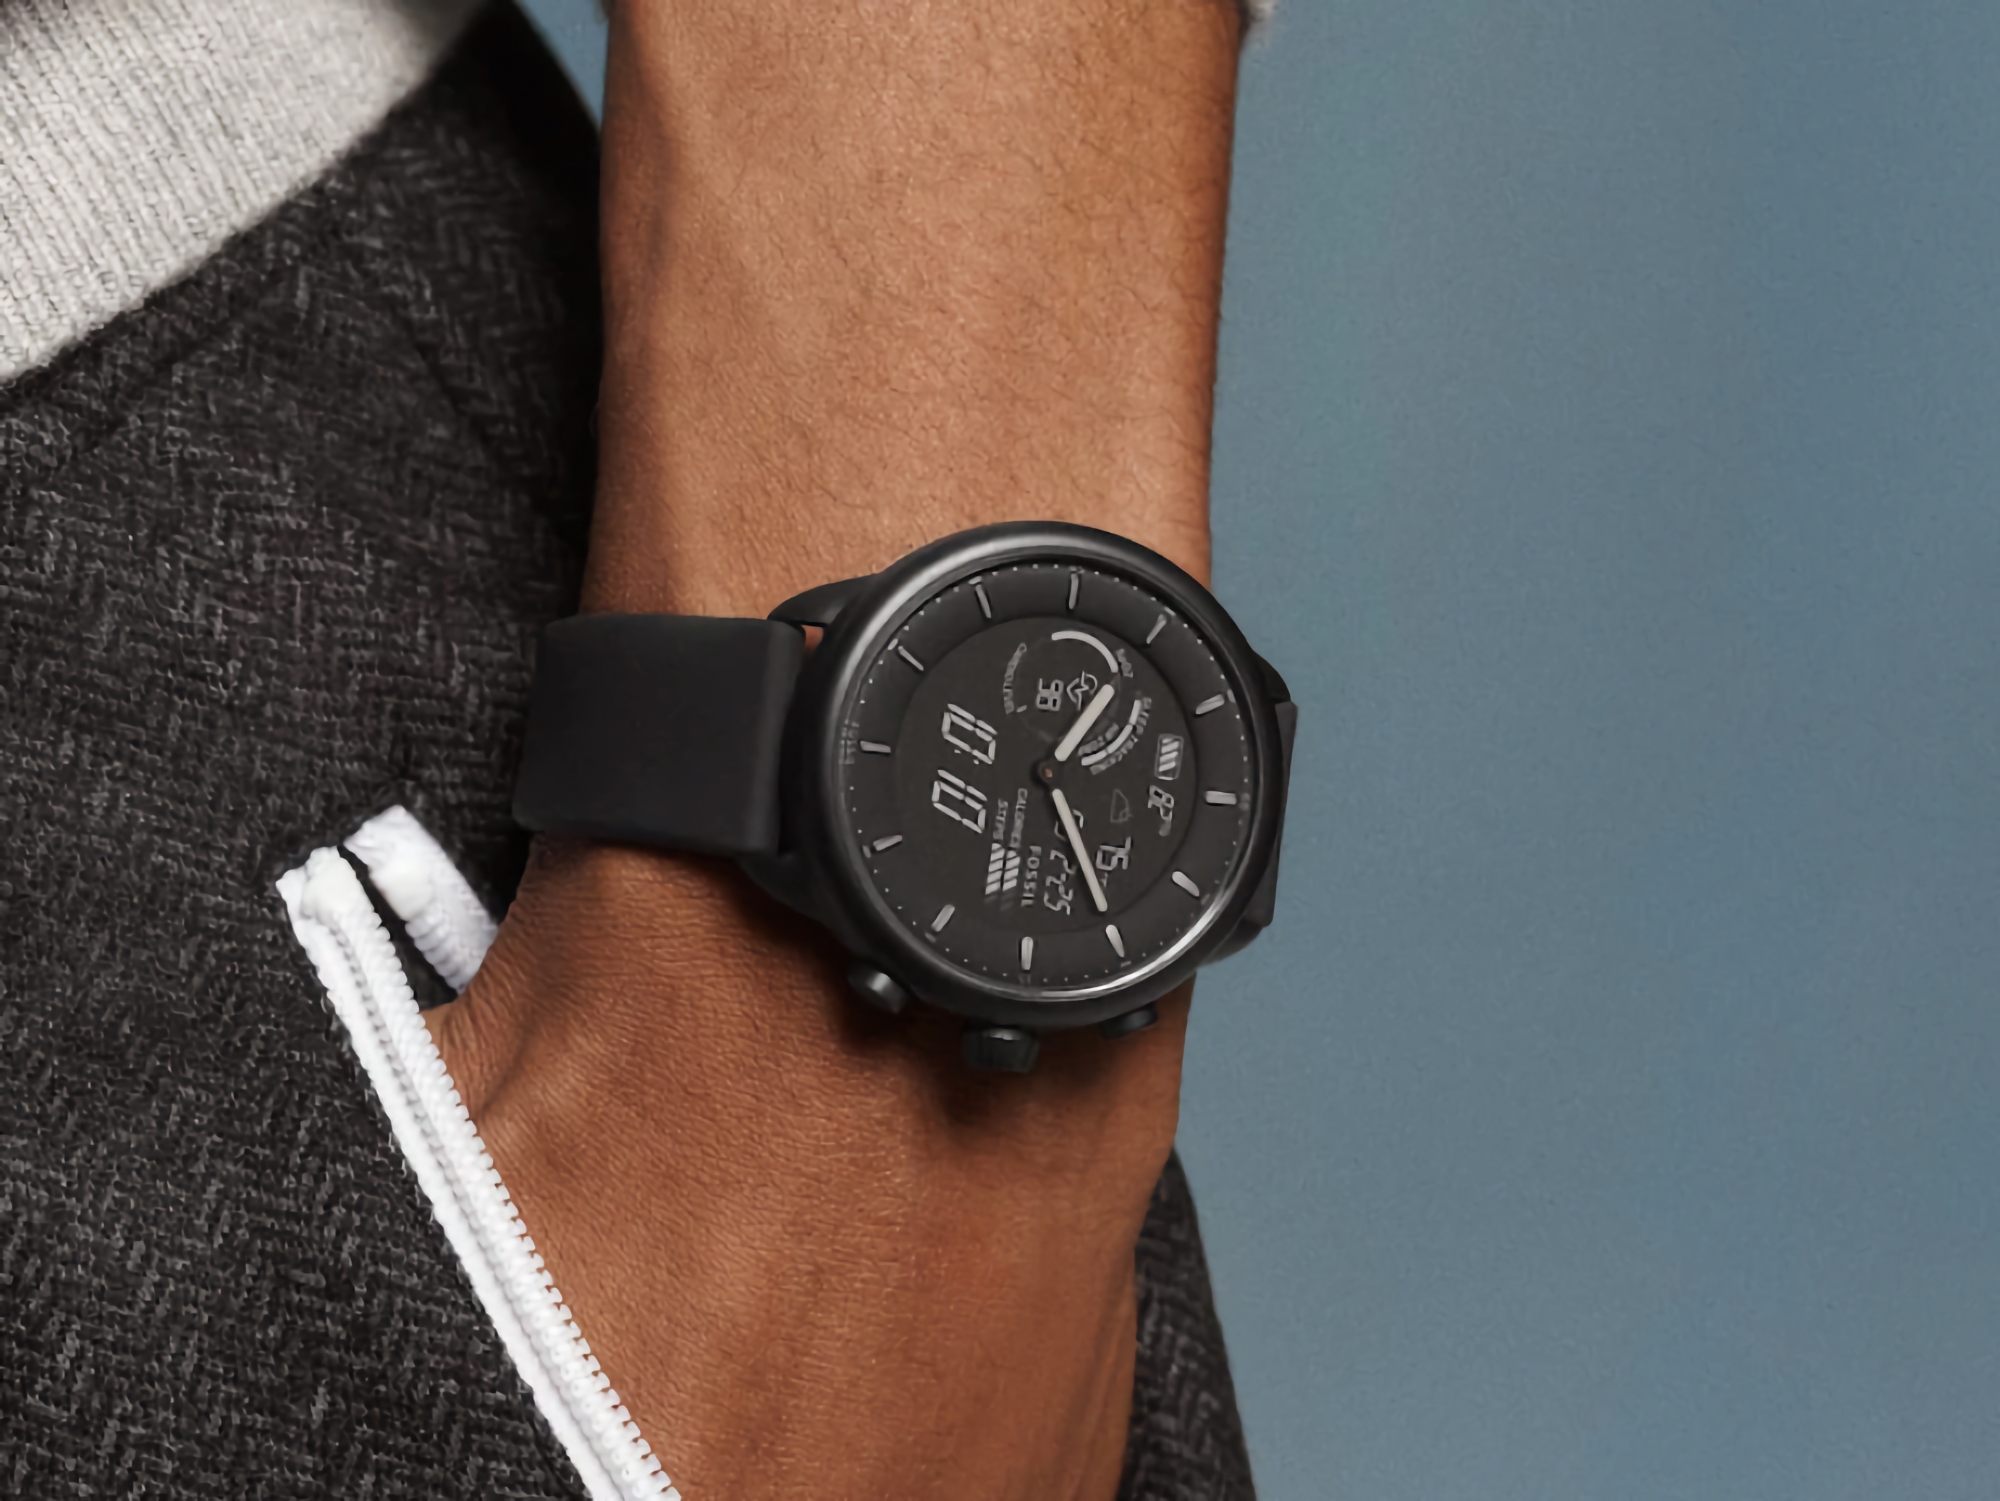 Fossil Gen 6 Hybrid Wellness Edition: hybrydowy smartwatch z czujnikiem SpO2, obsługą Amazon Alexa i czasem pracy na baterii do 14 dni